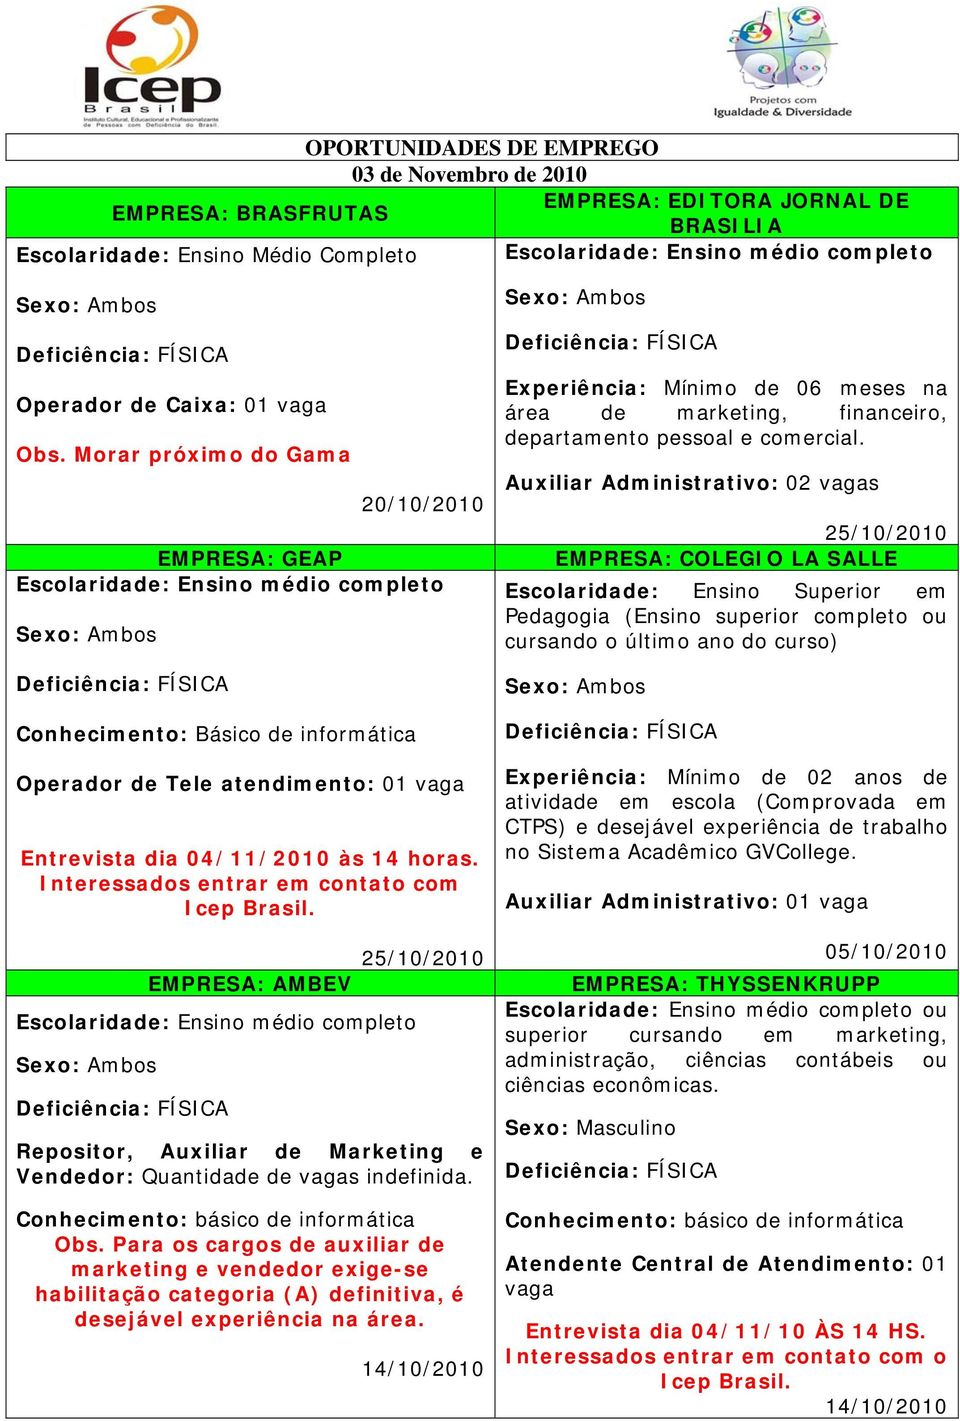 Interessados entrar em contato com Icep Brasil. EMPRESA: AMBEV 25/10/2010 Repositor, Auxiliar de Marketing e Vendedor: Quantidade de vagas indefinida. Obs.